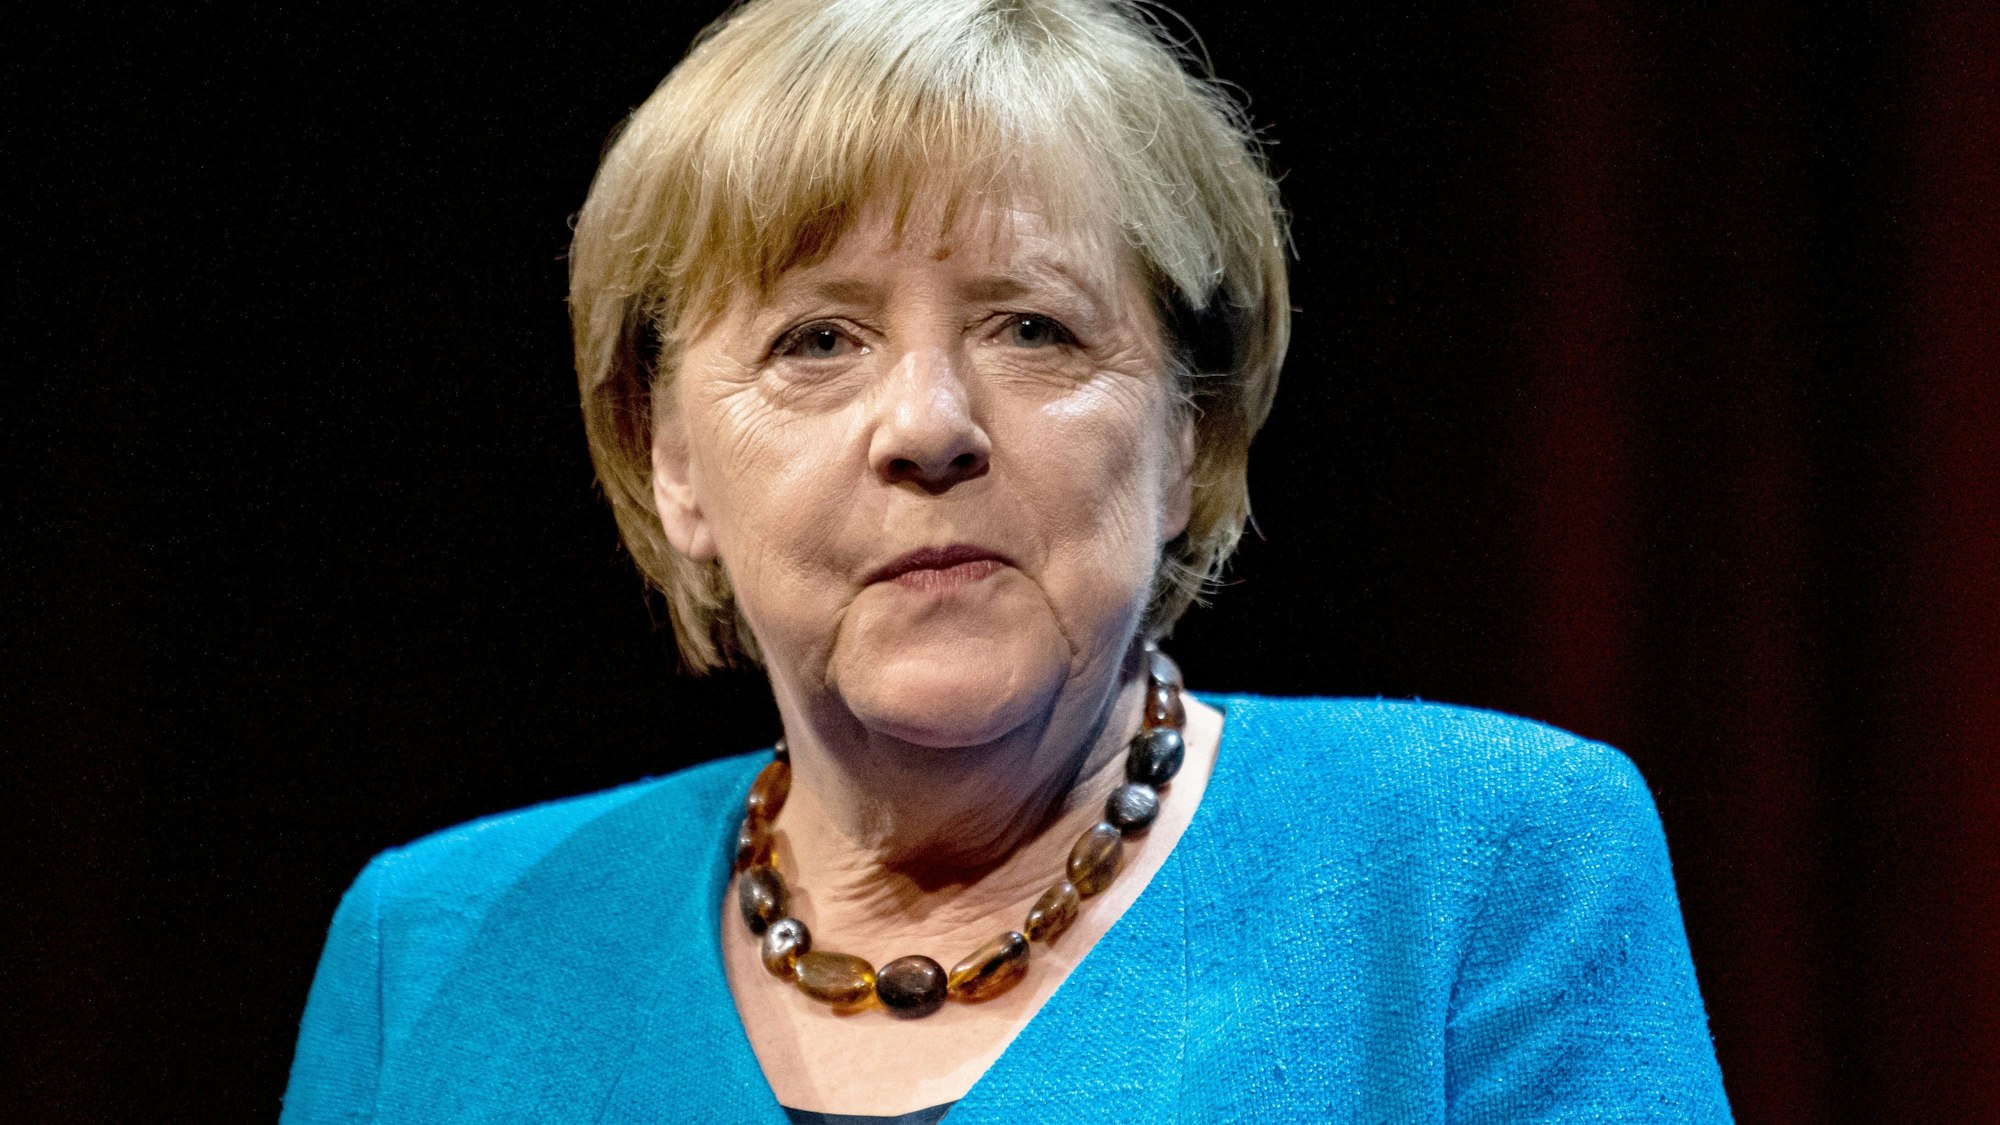 Die ehemalige Bundeskanzlerin Angela Merkel blickt an der Kamera vorbei.